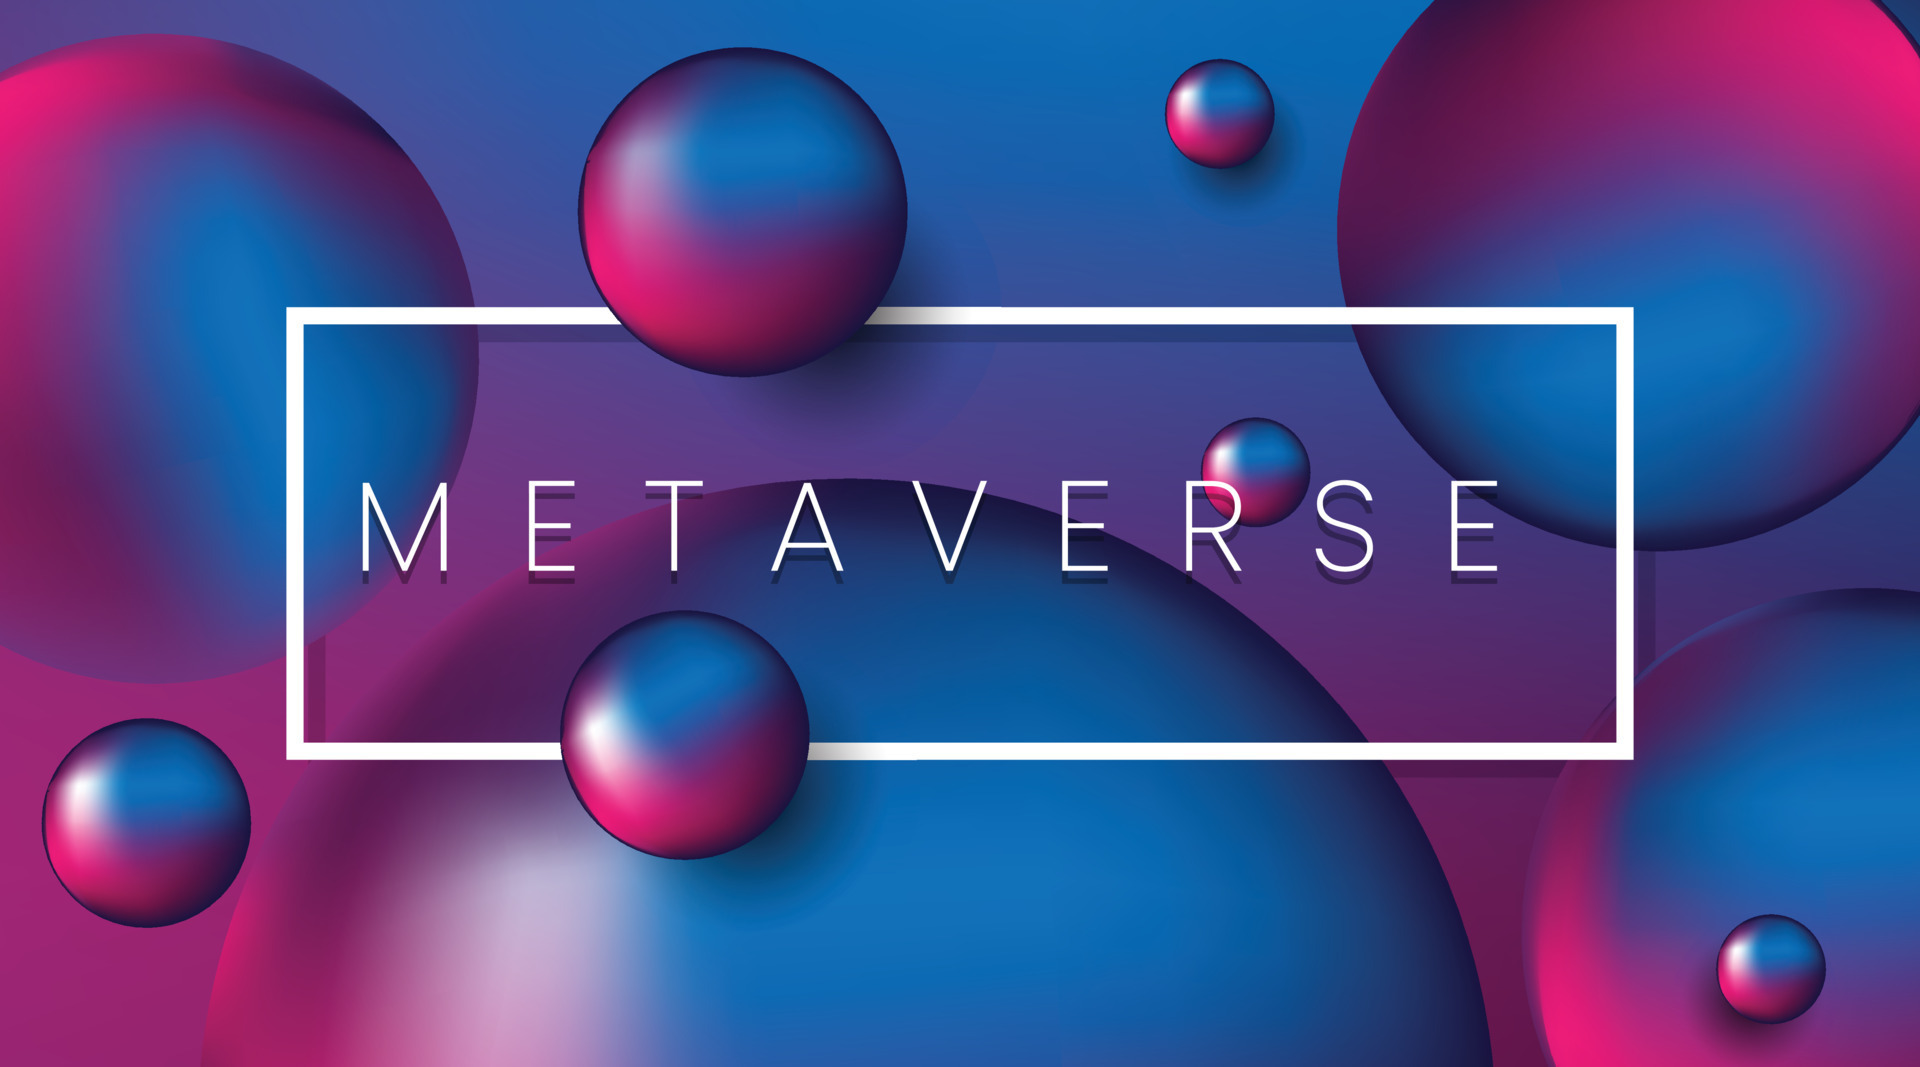 这张图片展示了多个漂浮的三维球体，背景是蓝紫色渐变，中间有一个带有“METAVERSE”字样的白色矩形框。